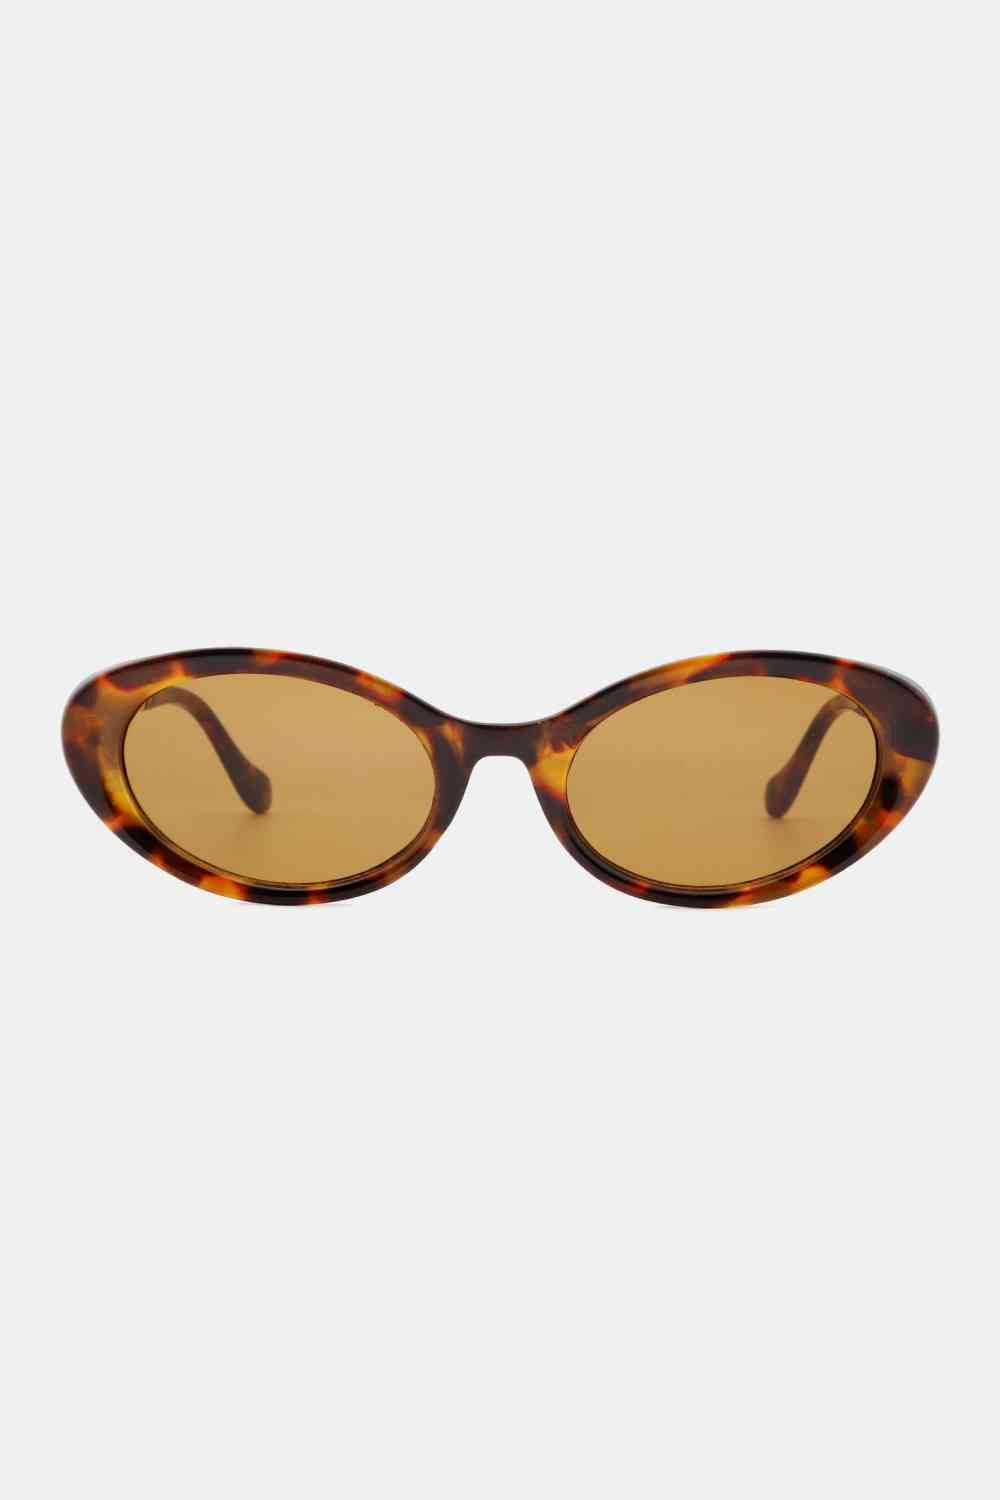 TEEK - Decide Frame Cat-Eye Sunglasses EYEGLASSES TEEK Trend   